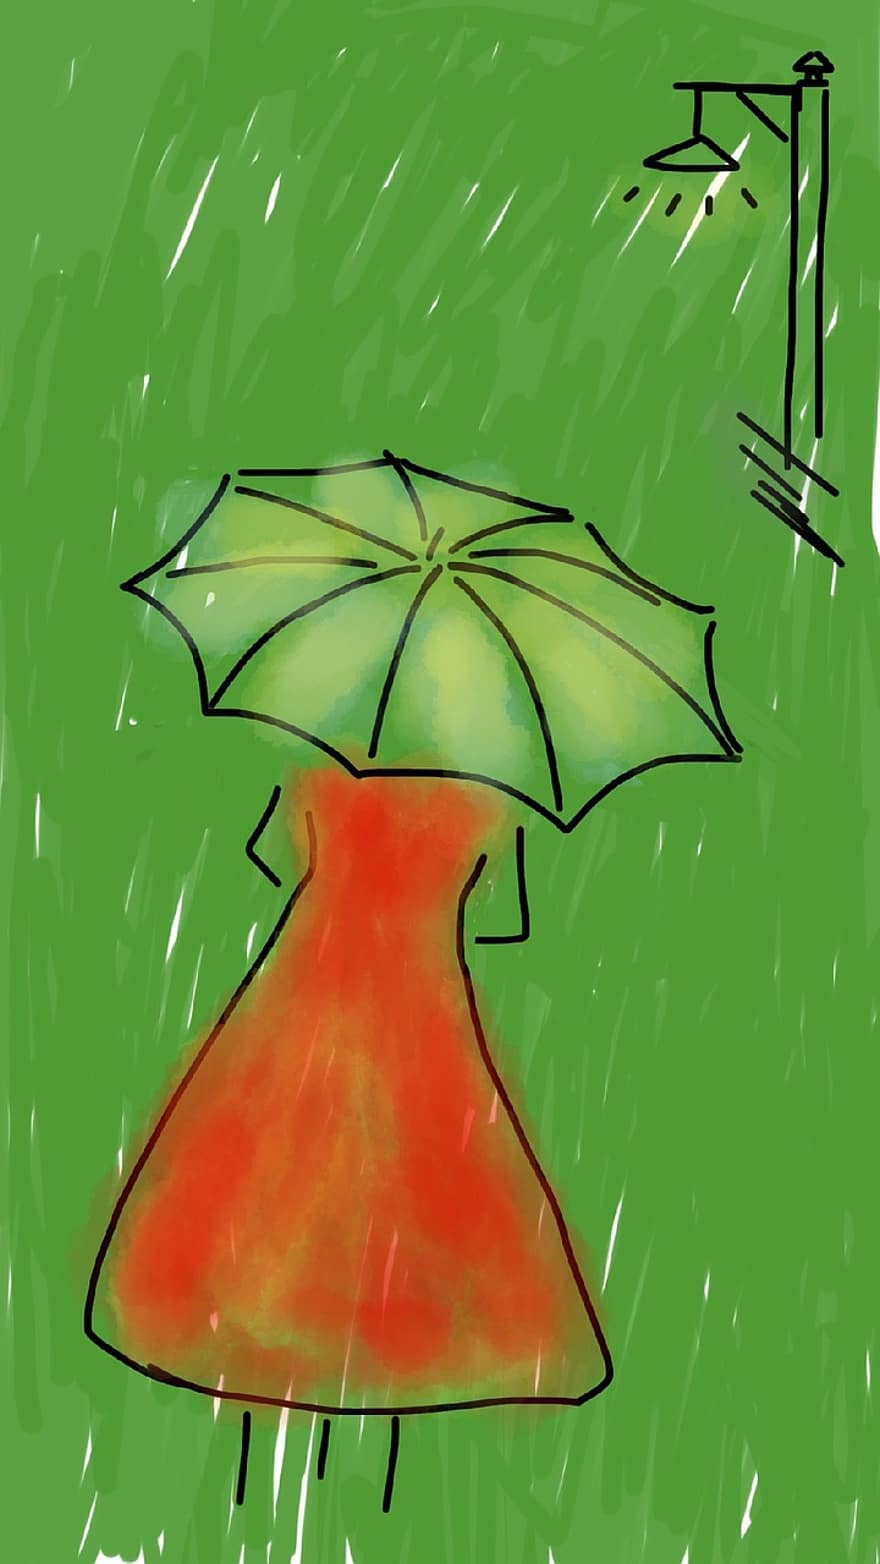 đàn bà, ô, mưa, nhiều mưa, váy đỏ, đường phố, đi dạo, giống cái, trẻ, màu xanh lá, đèn đường